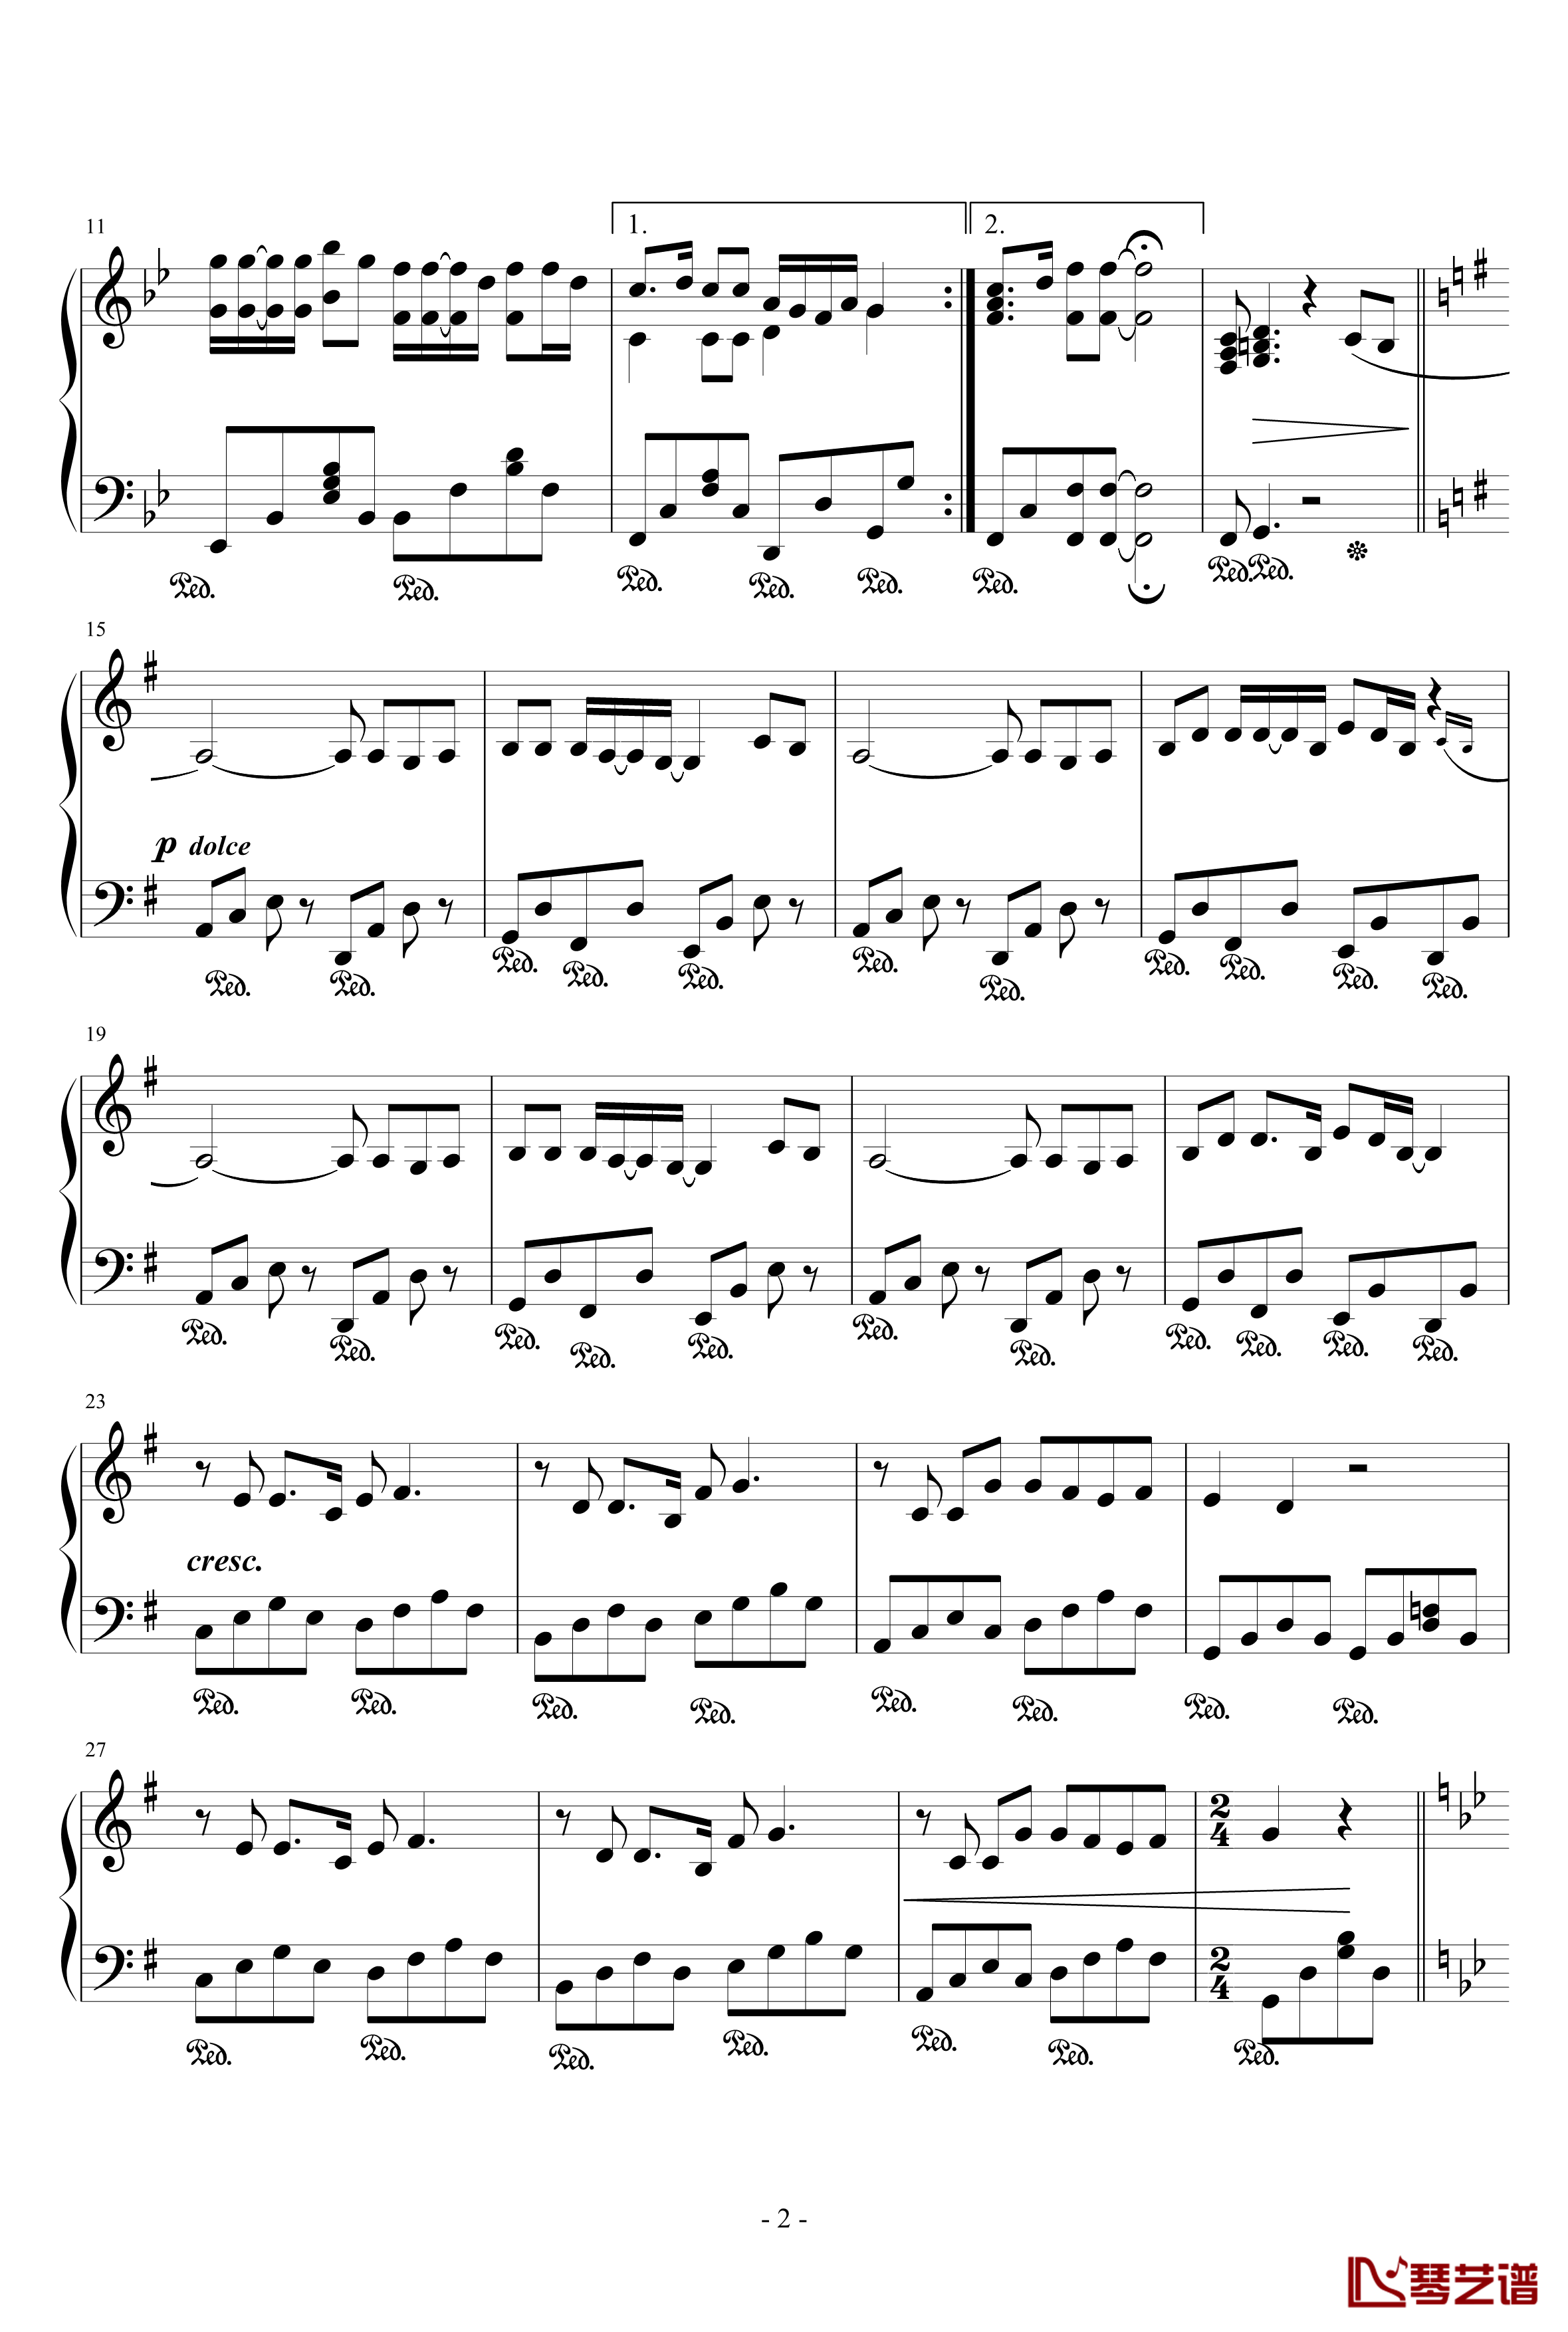 鲁冰花钢琴谱-古阿明2